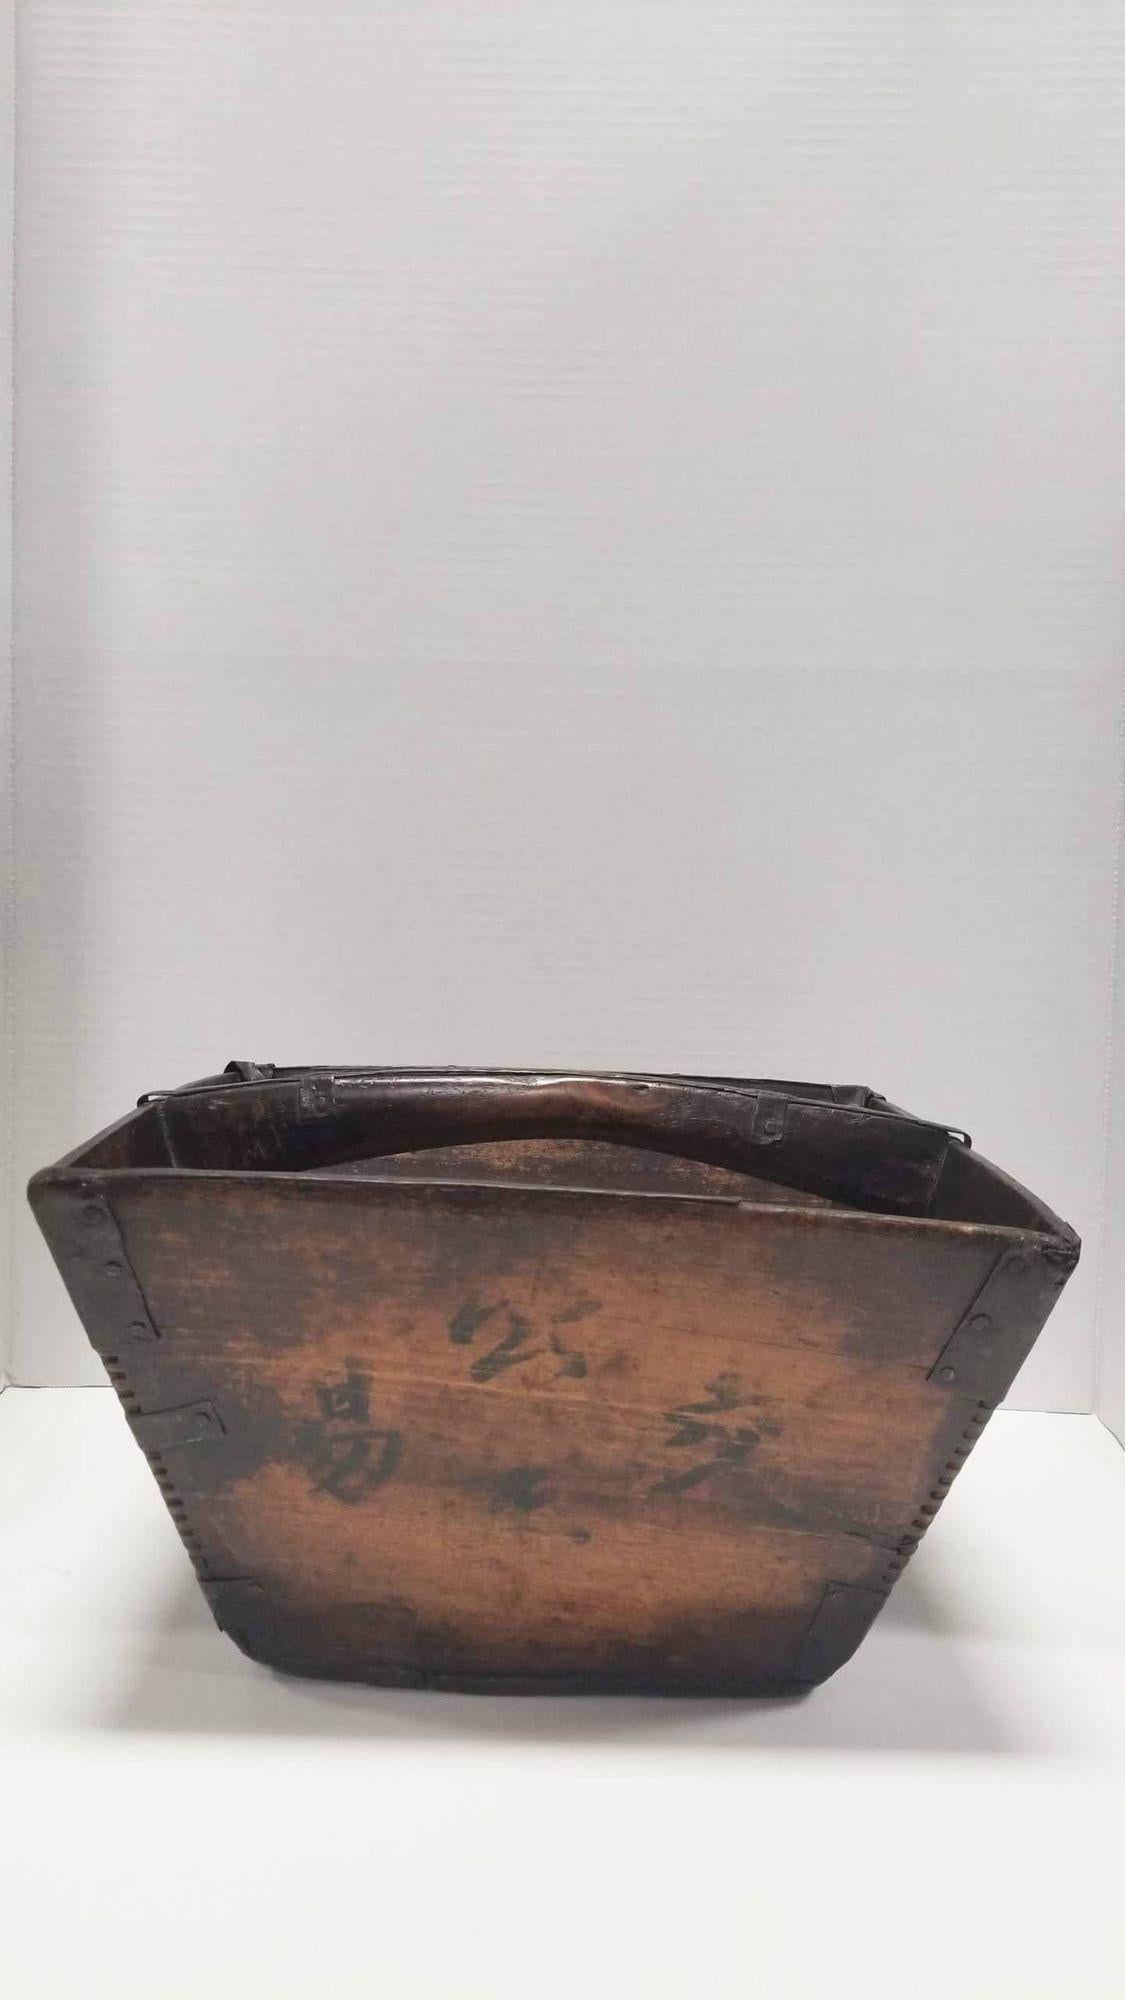 Originaire de la province de Shanxi en Chine, cette étonnante boîte à riz est un véritable chef-d'œuvre fabriqué avec précision à partir de bois d'orme et de bois chinois traditionnel. A partir des années 1850 et 1880. Ce récipient est l'emblème